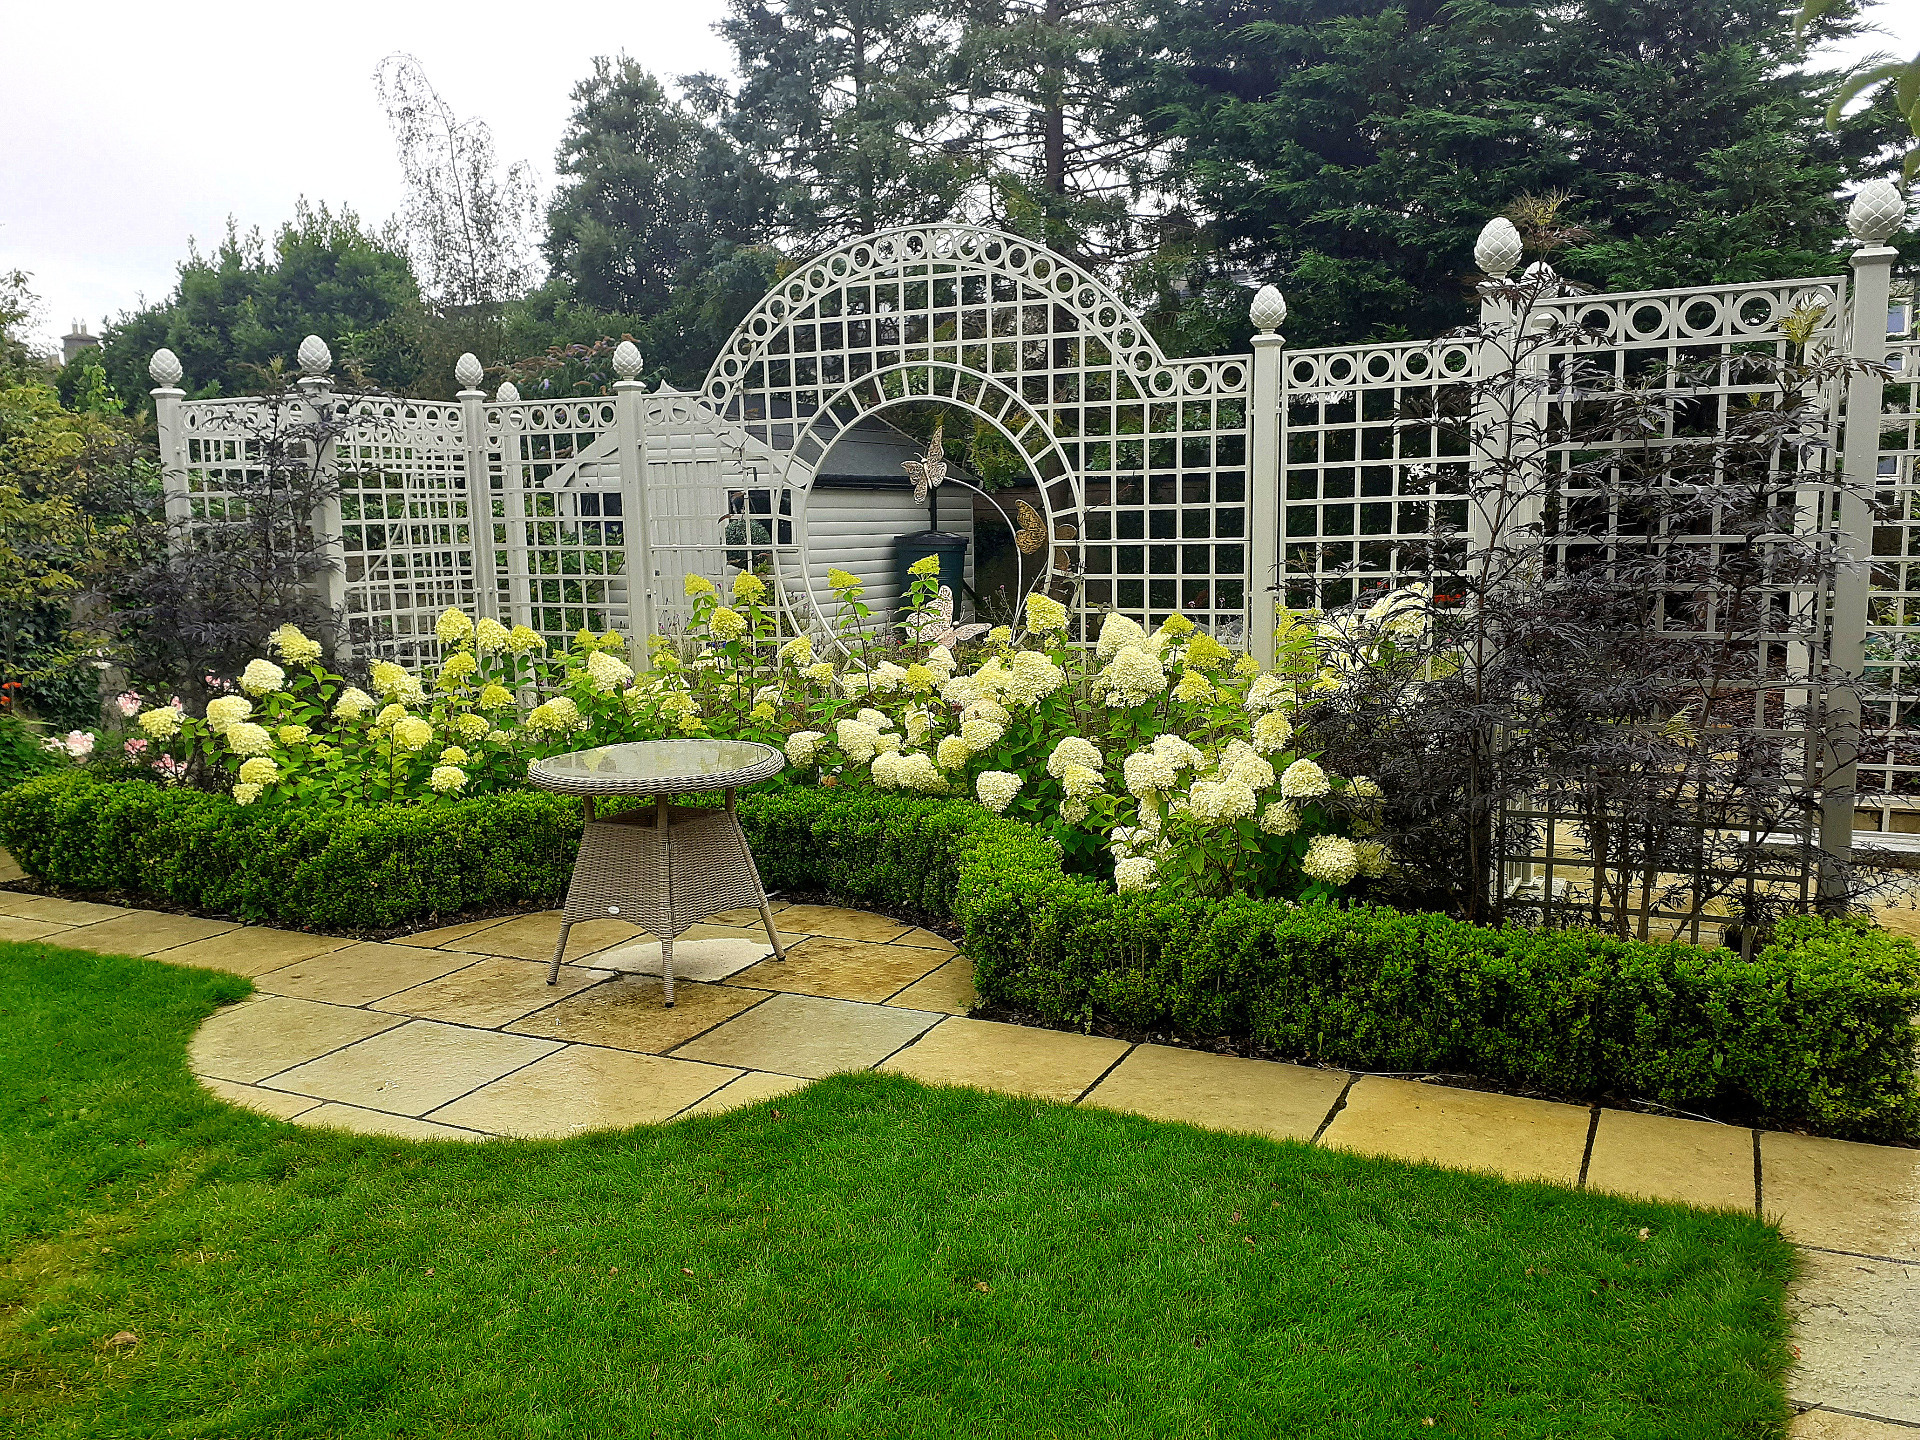 Bespoke Garden Trellis Screen - supplied + fitted by Owen Chubb Garden Landscapers. Tel 087-2306 128